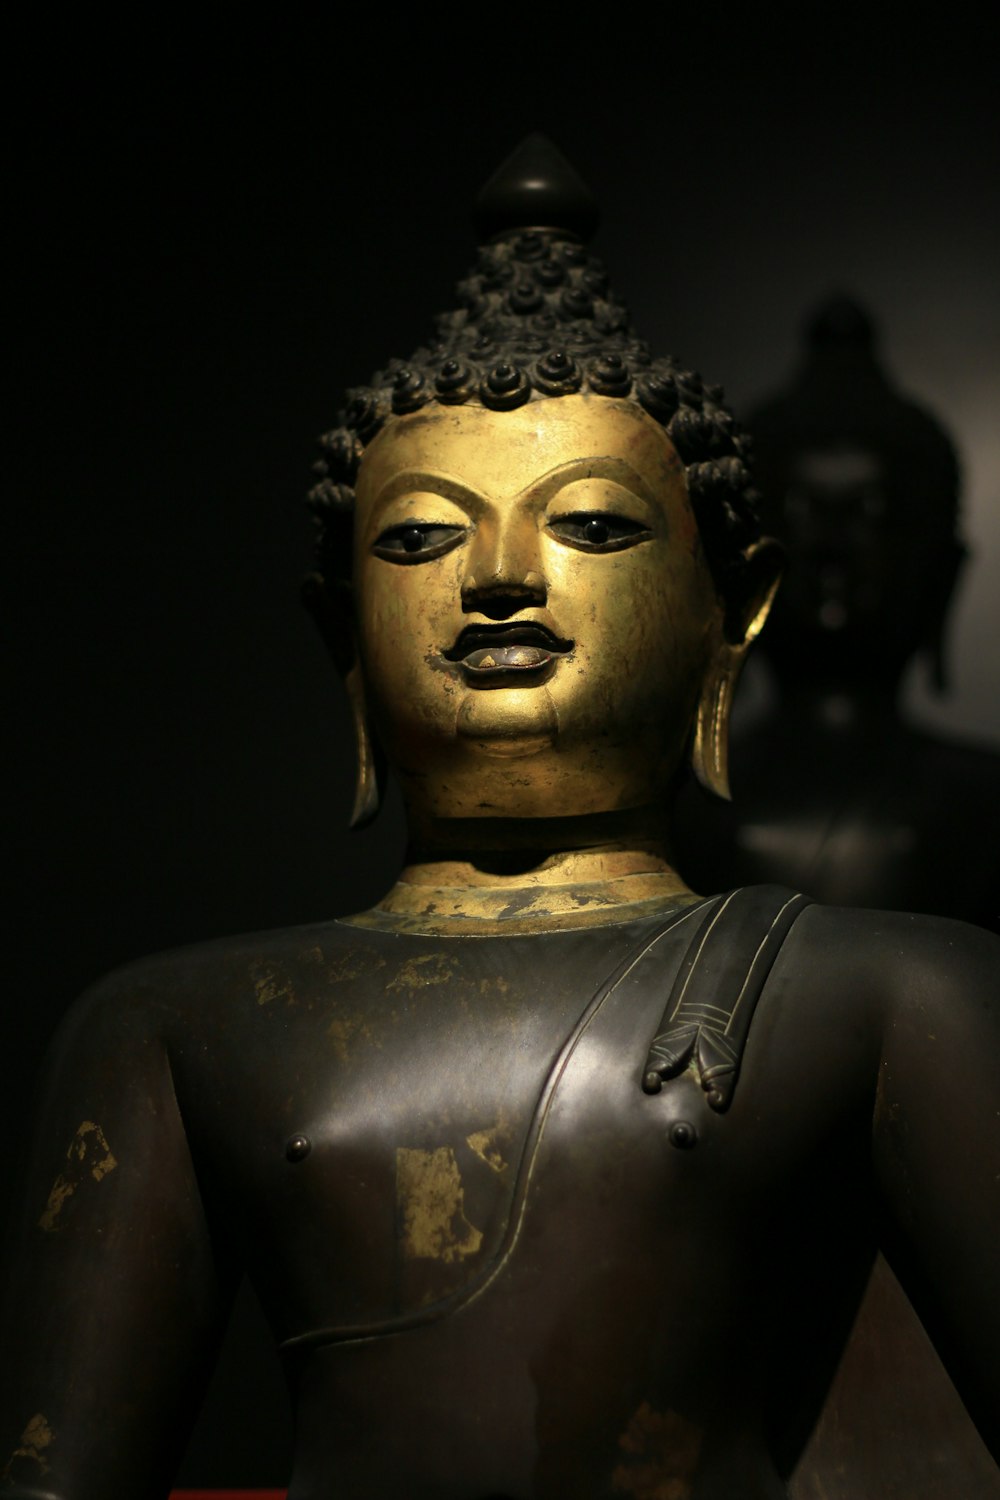 Une statue de Bouddha dorée dans une pièce sombre